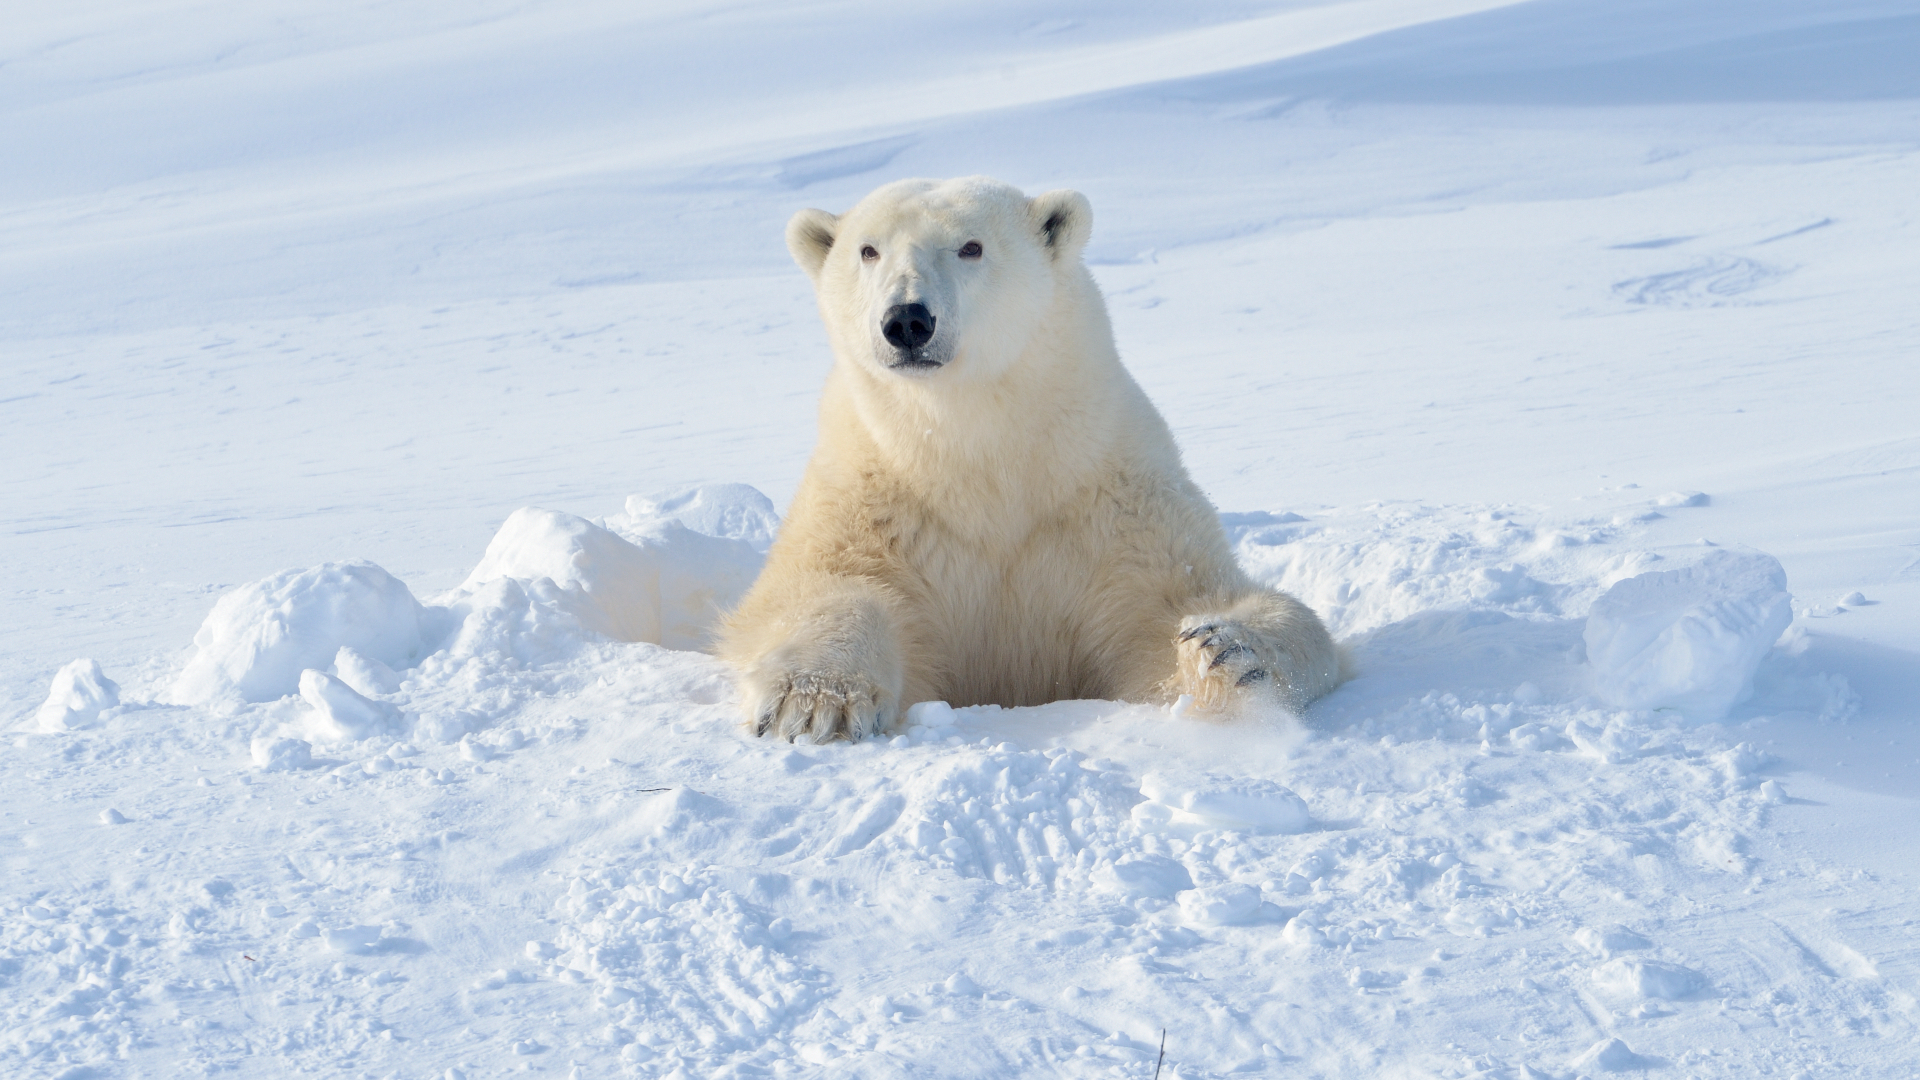 A peligros enfrenta oso polar?